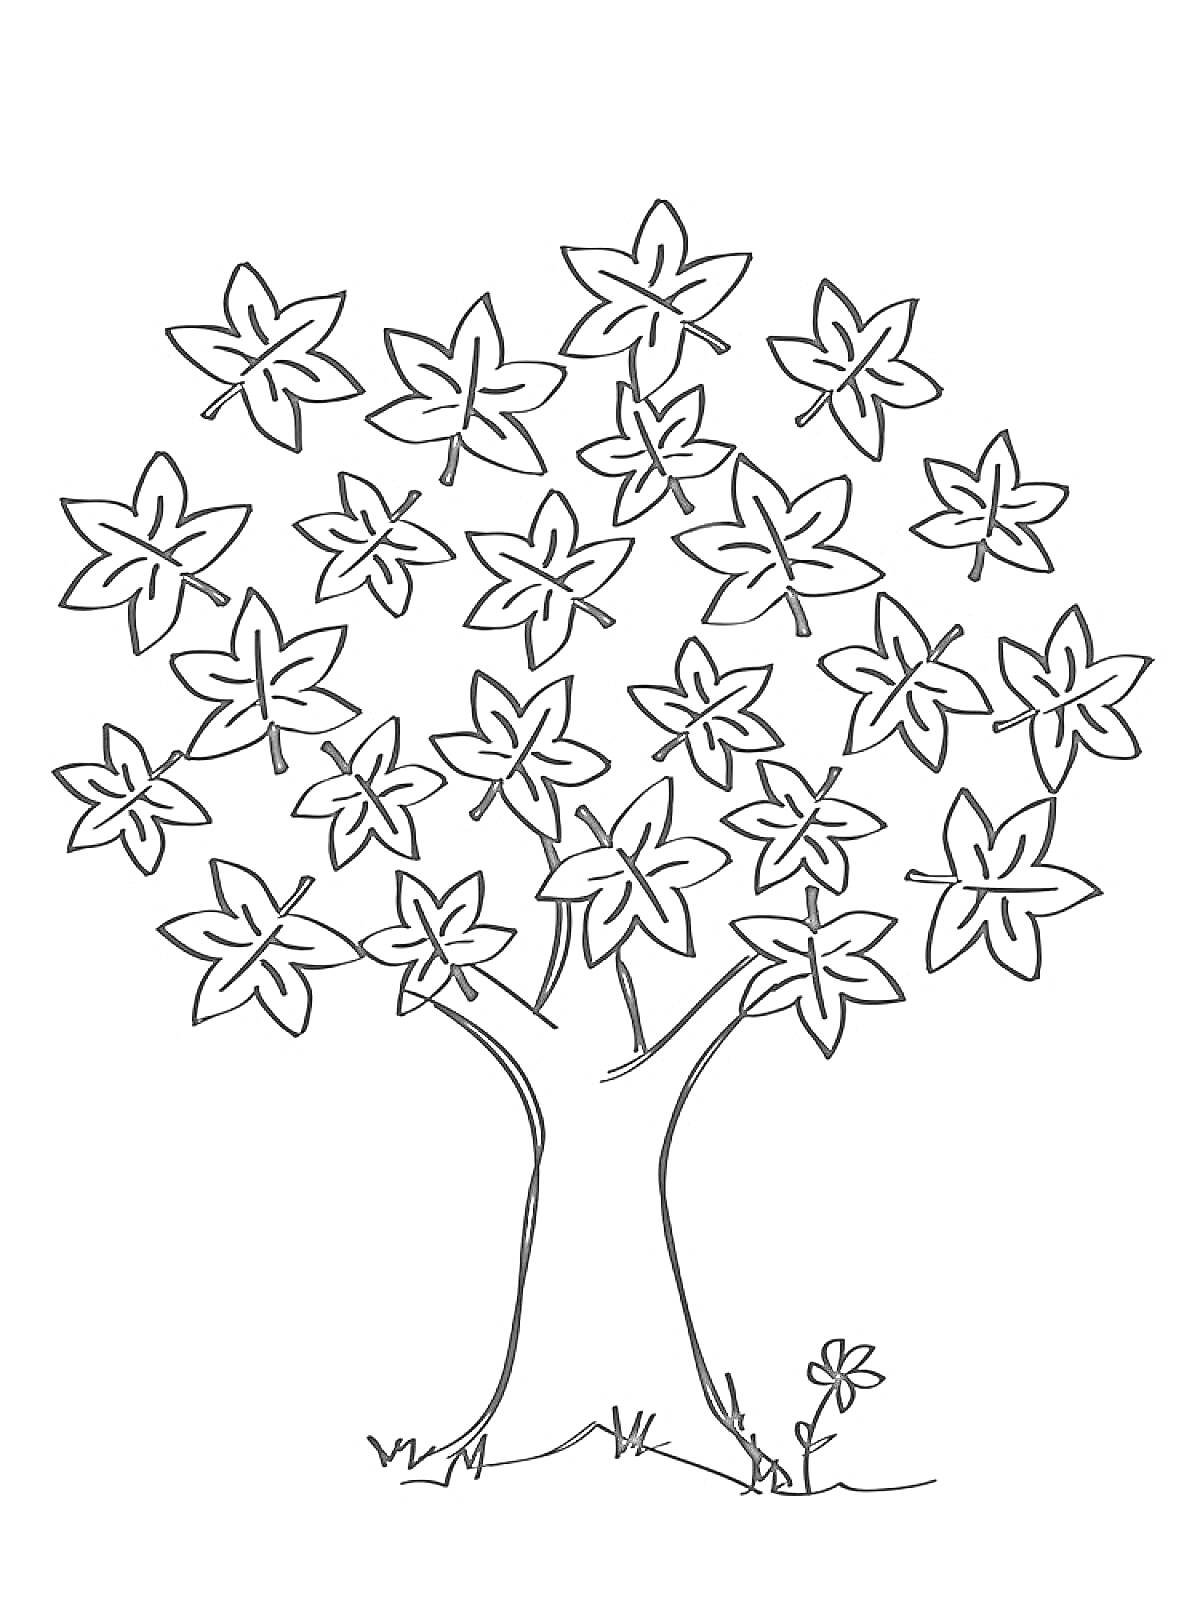 Раскраска Дерево с листьями в форме кленовых листьев и маленьким цветком у корней